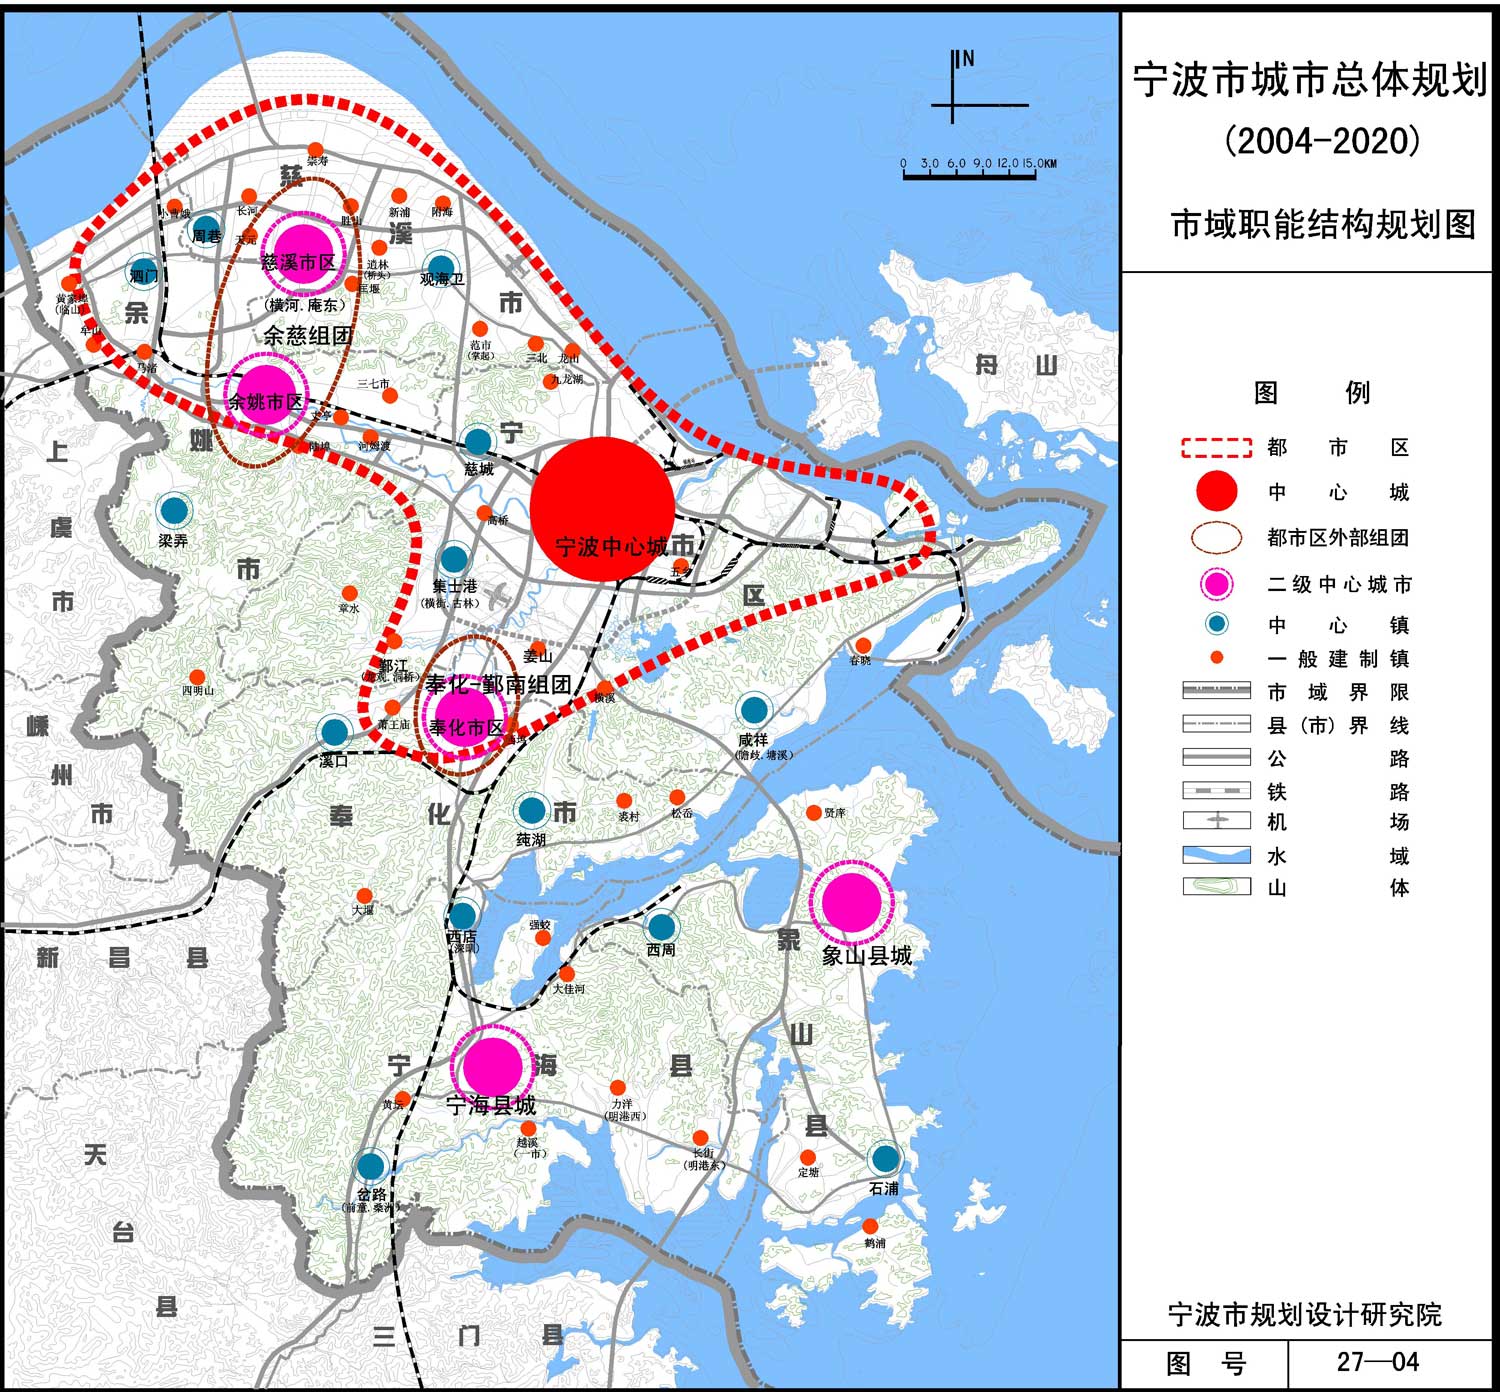 宁波市 6区2市2县 标准地图 2019版 - 哔哩哔哩